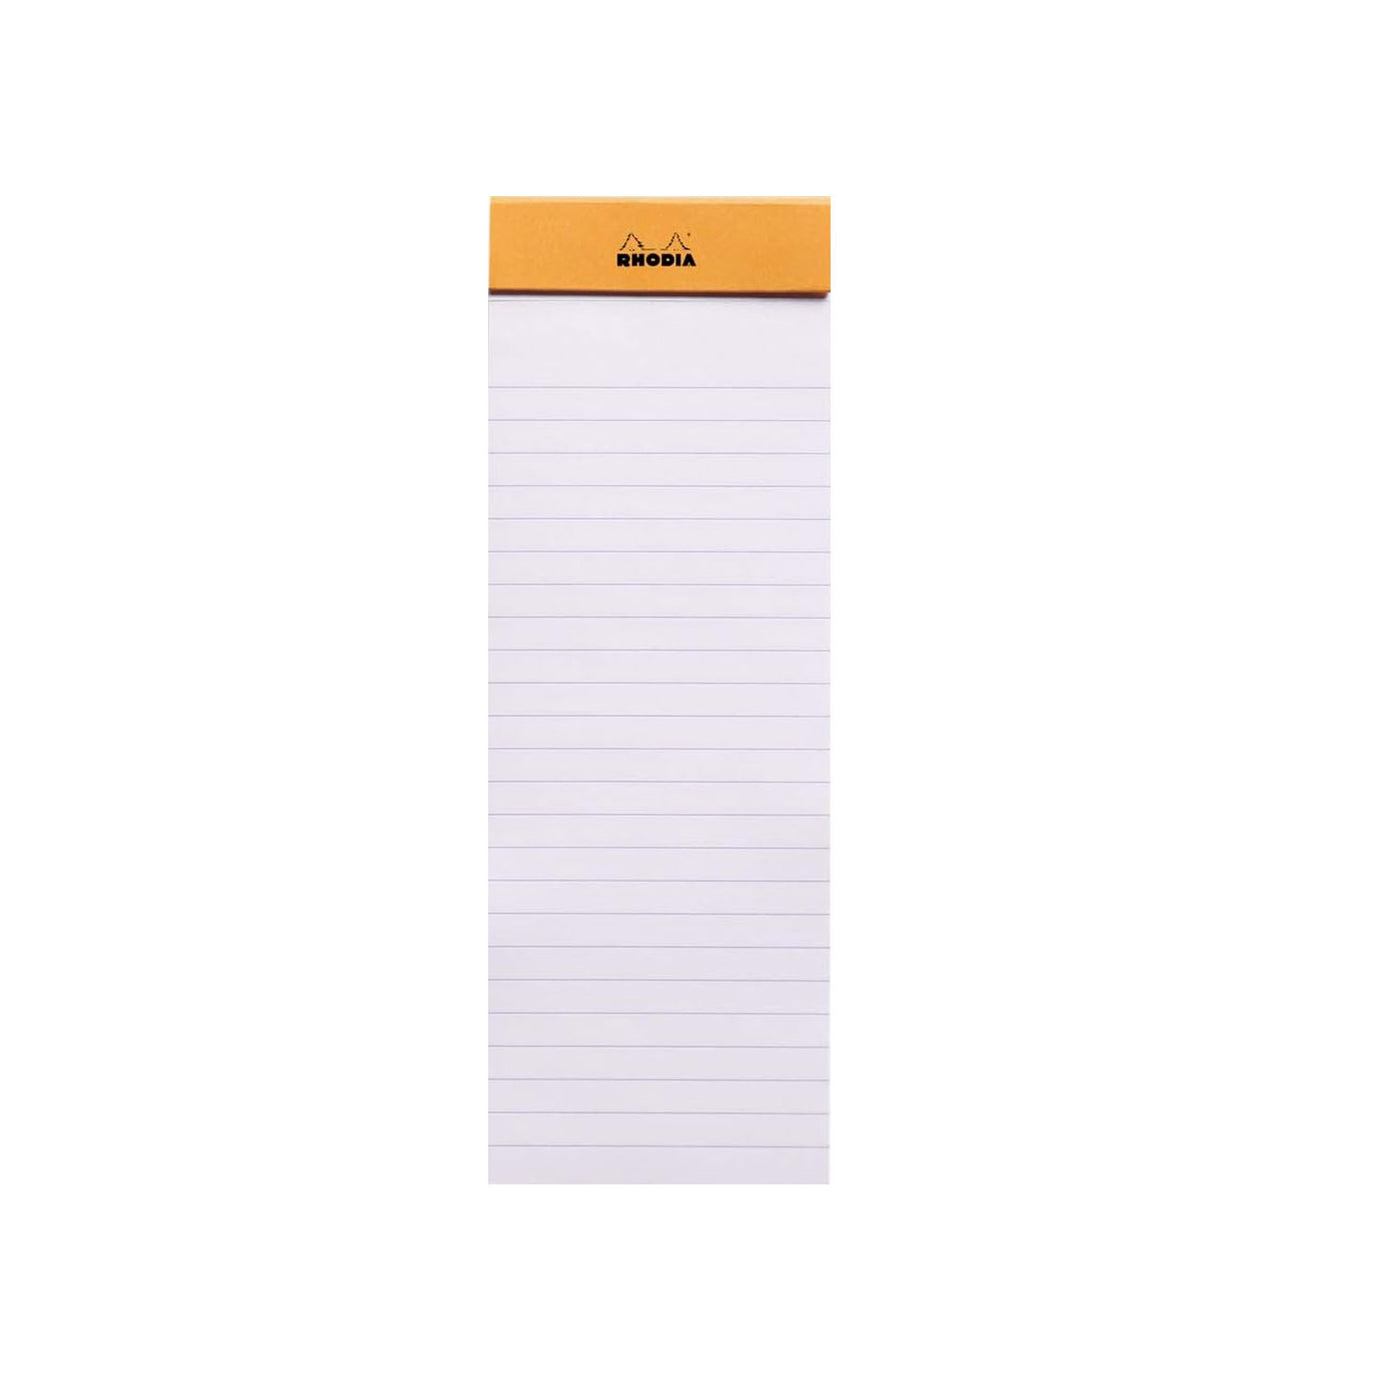 Rhodia No.8 Orange Notepad - Ruled 2